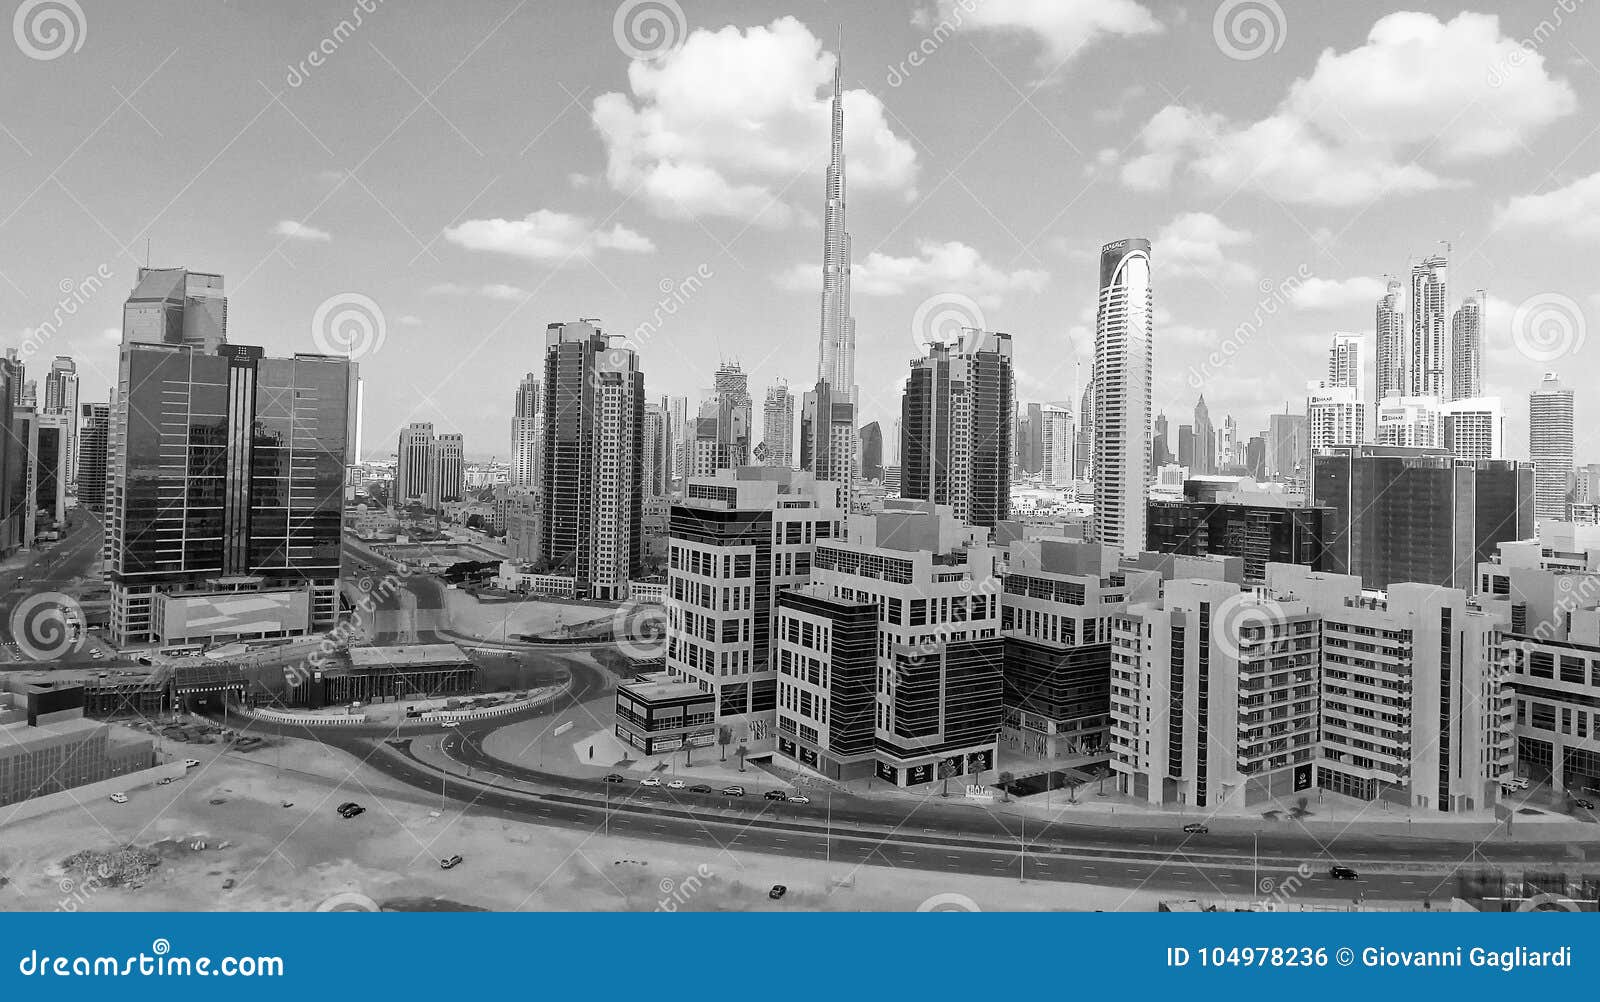 DUBAI DECEMBER 2016 Aerial View of City Skyscrapers. Dubai at